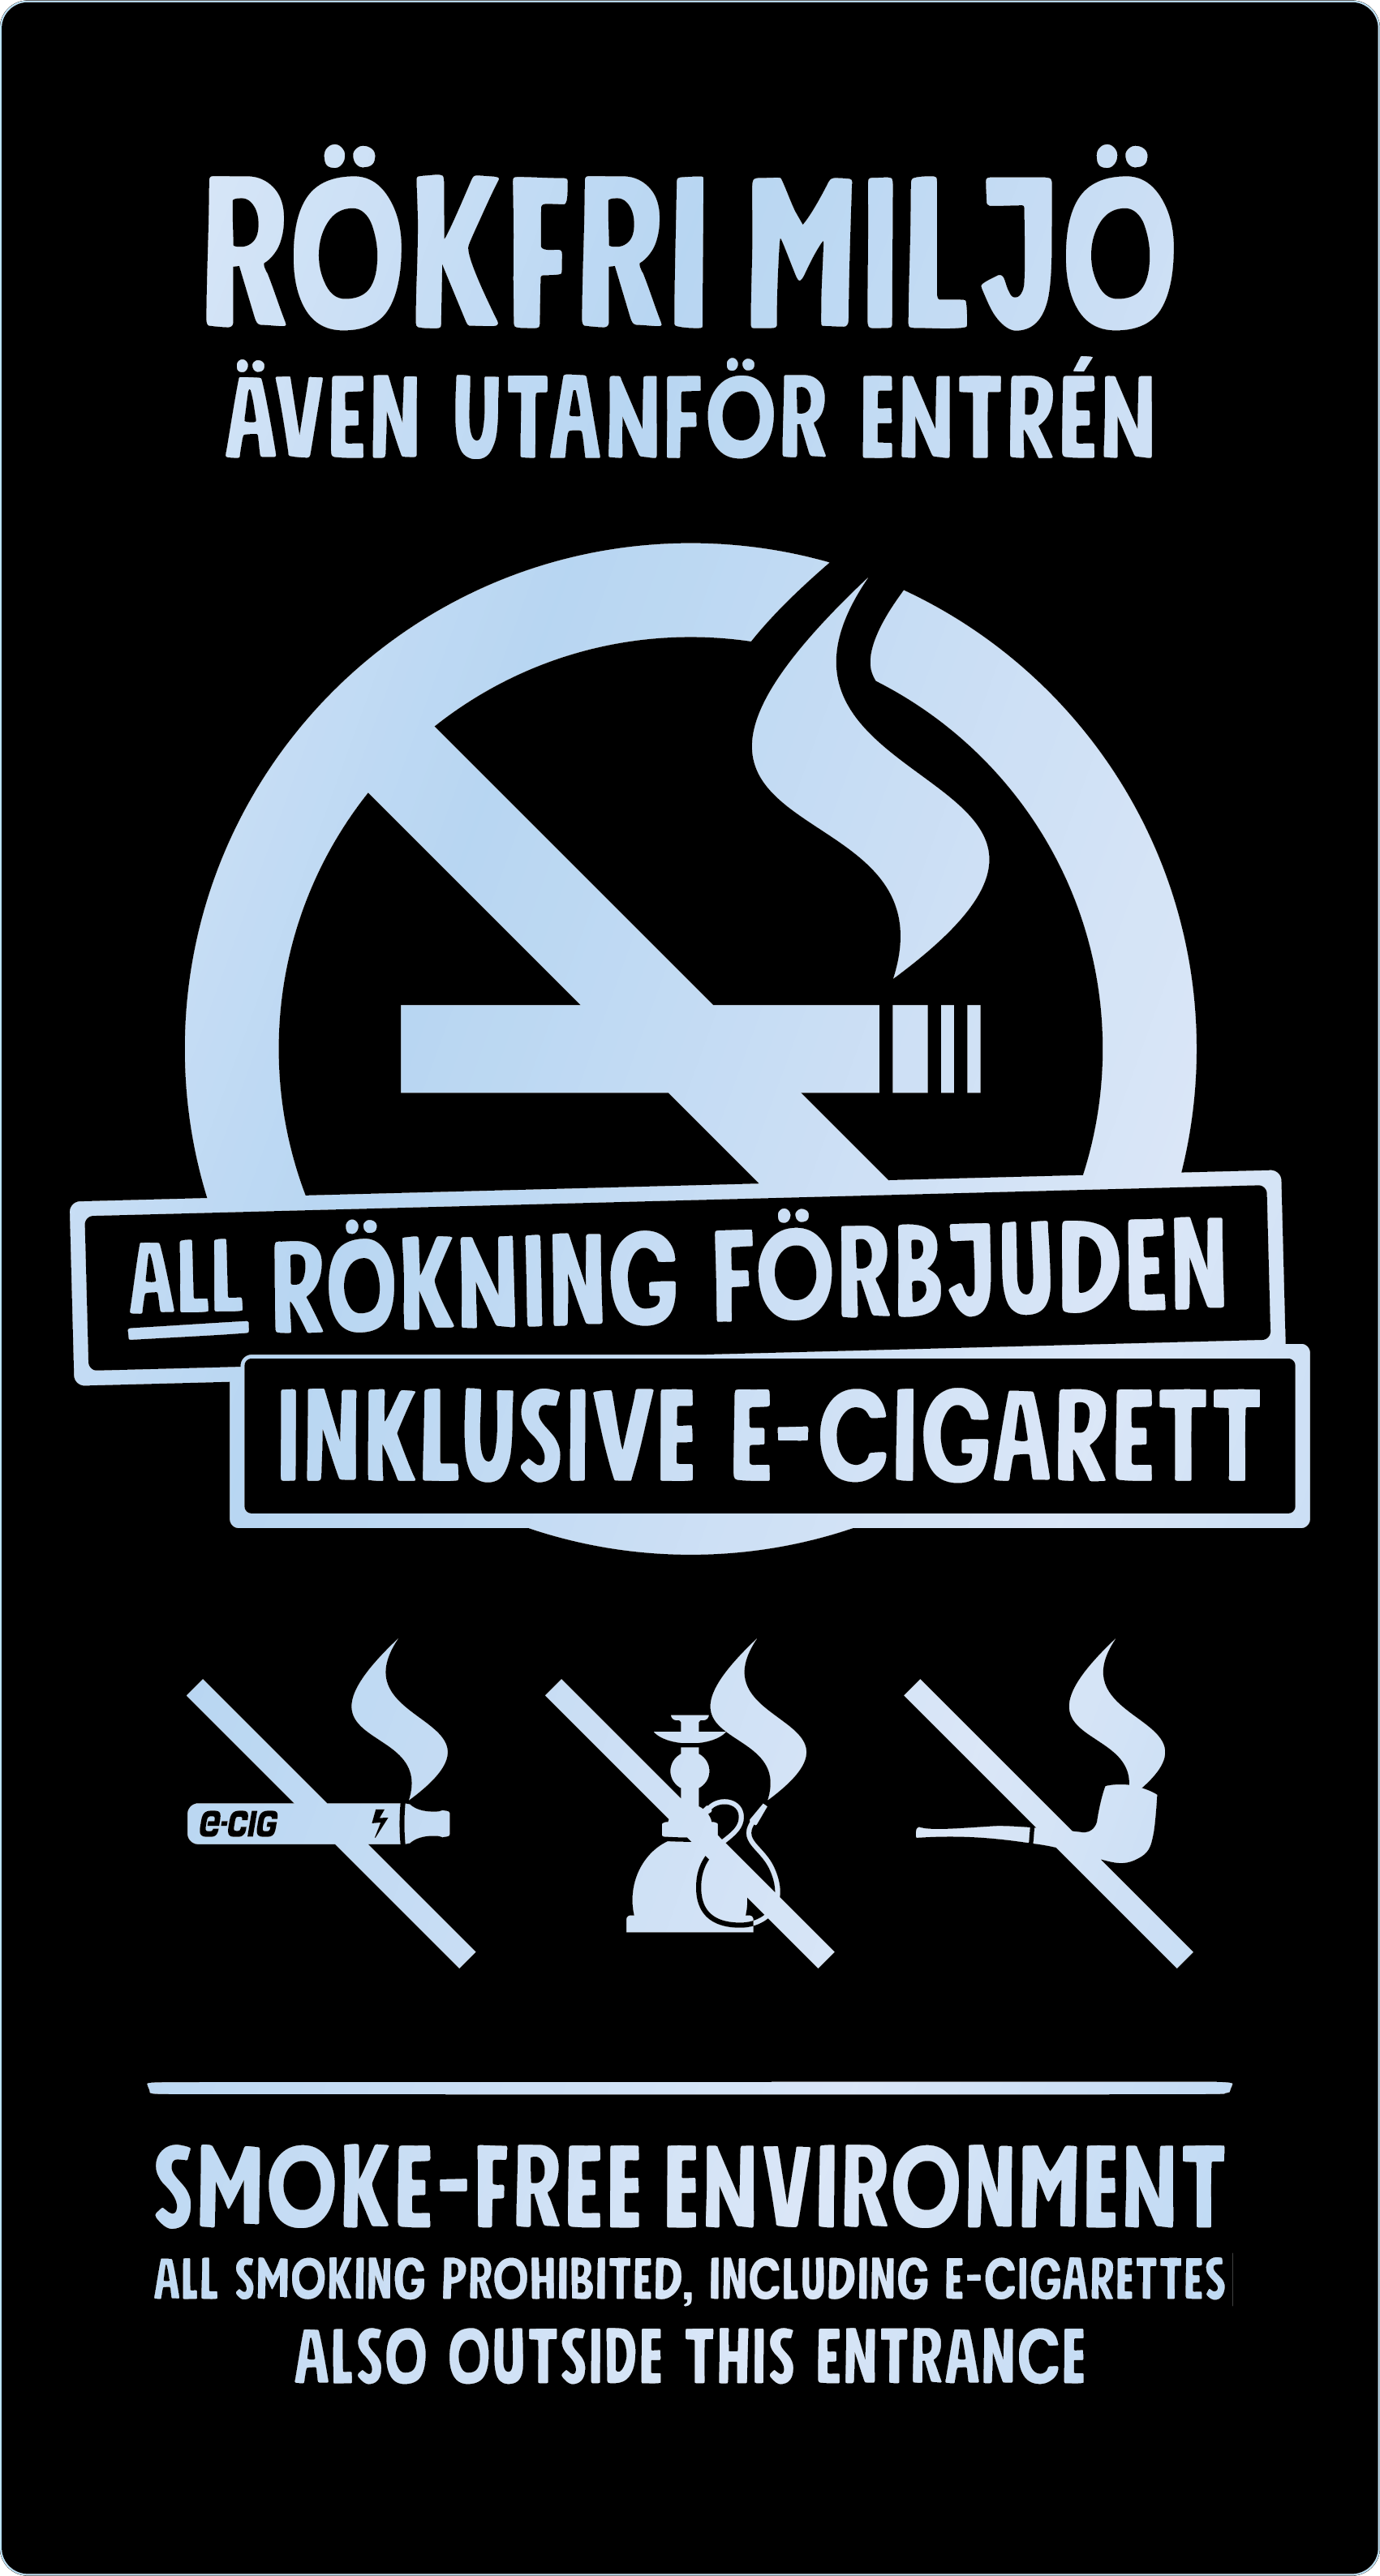 Bild rökförbudsskylt 05A15: Valfri PMS* / Transparent